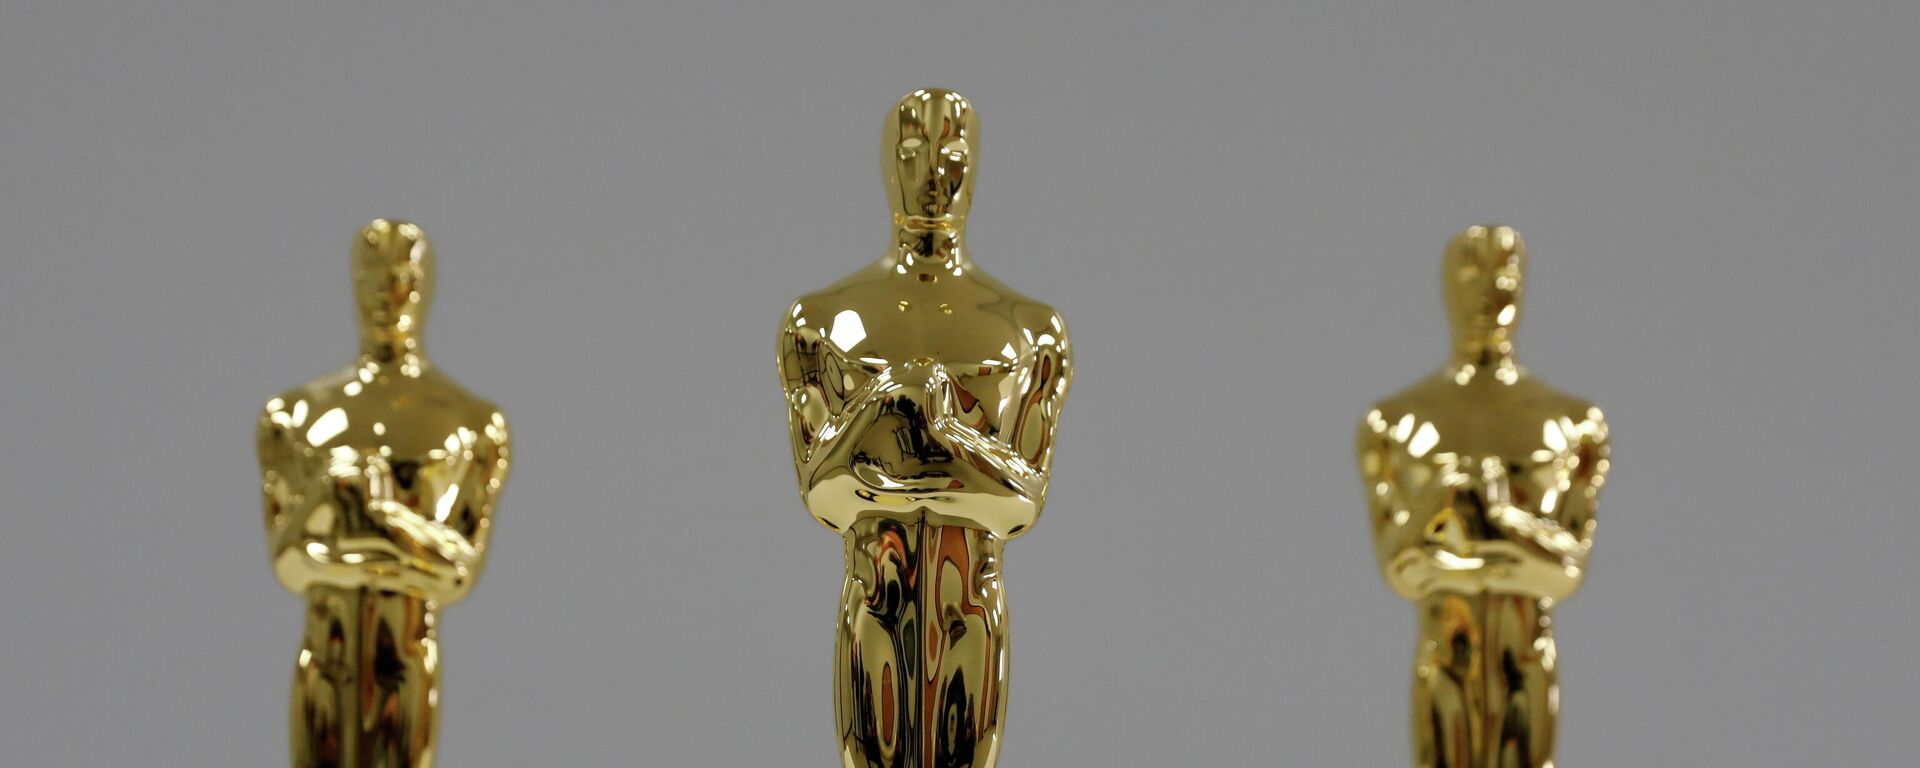 Estatuillas del premio Óscar (archivo) - Sputnik Mundo, 1920, 24.04.2021